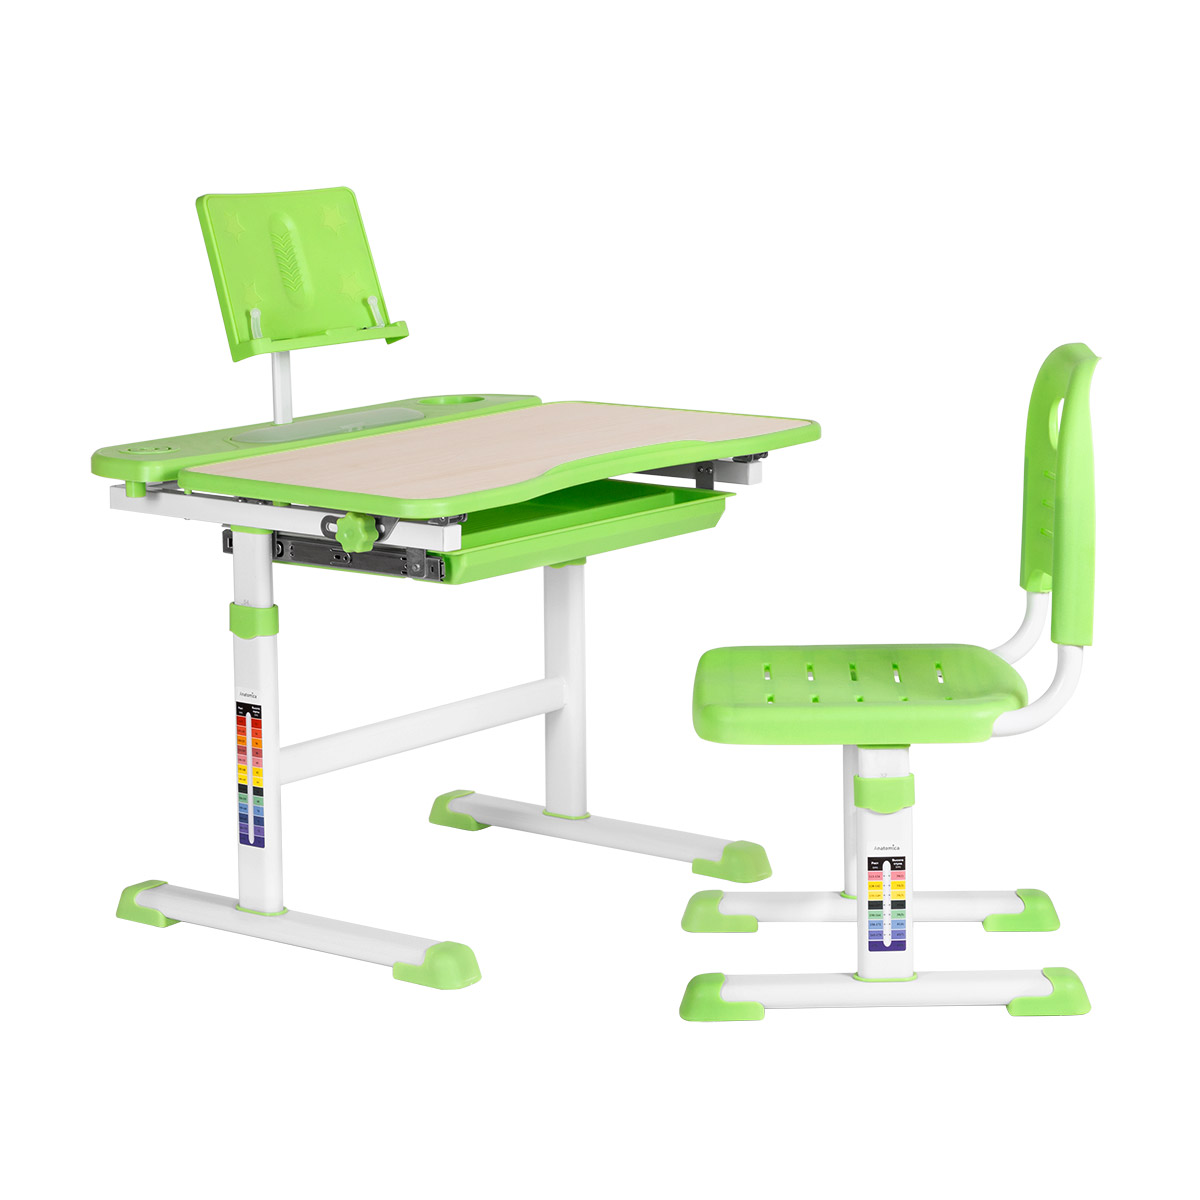 Комплект Anatomica парта и стул Avgusta клен/зеленый,  - купить со скидкой